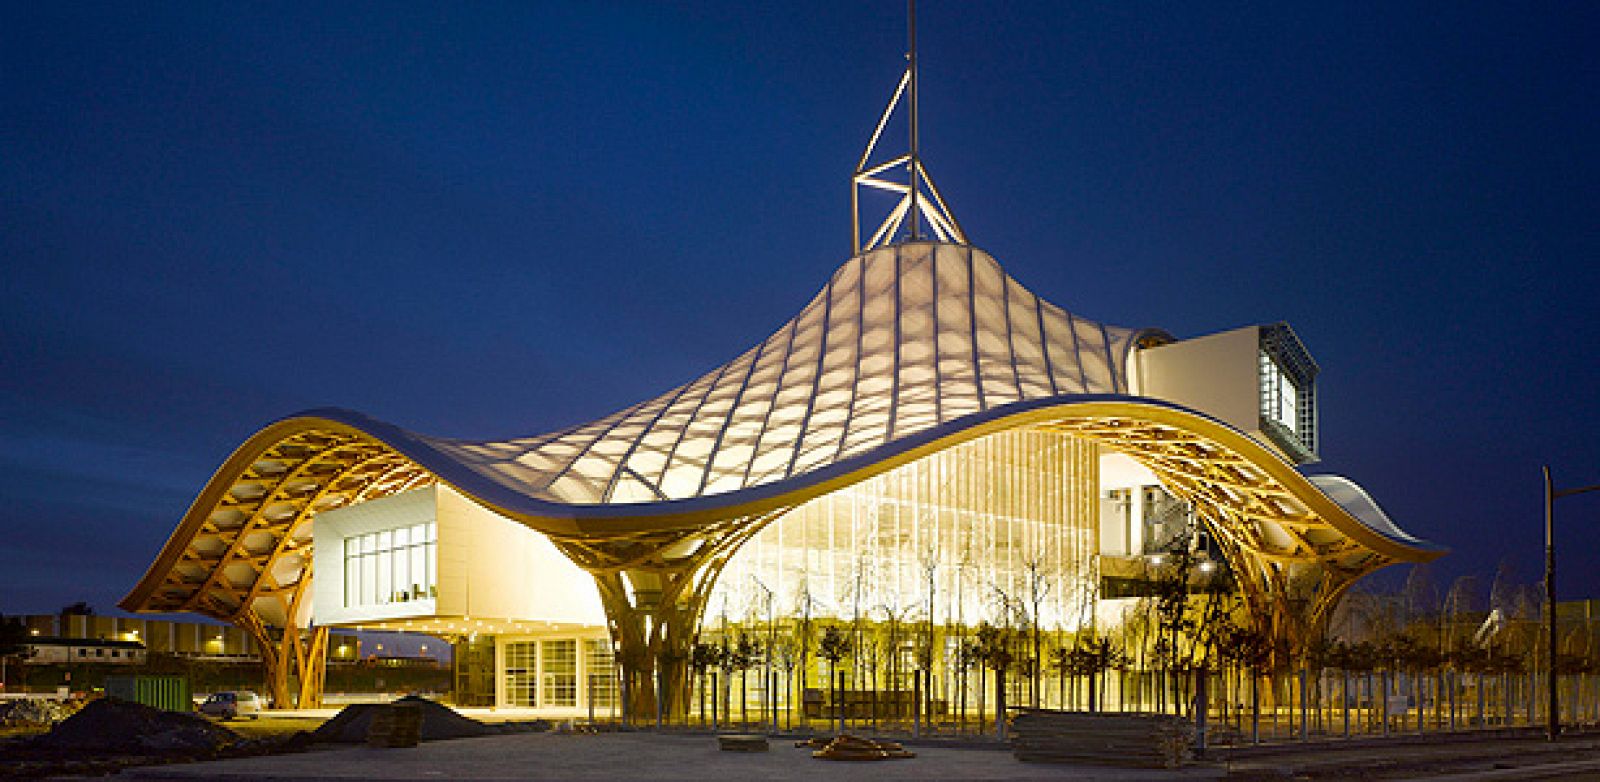 El edificio que alberga el nuevo museo de arte contemporáneo de la ciudad industrial de Metz, Francia